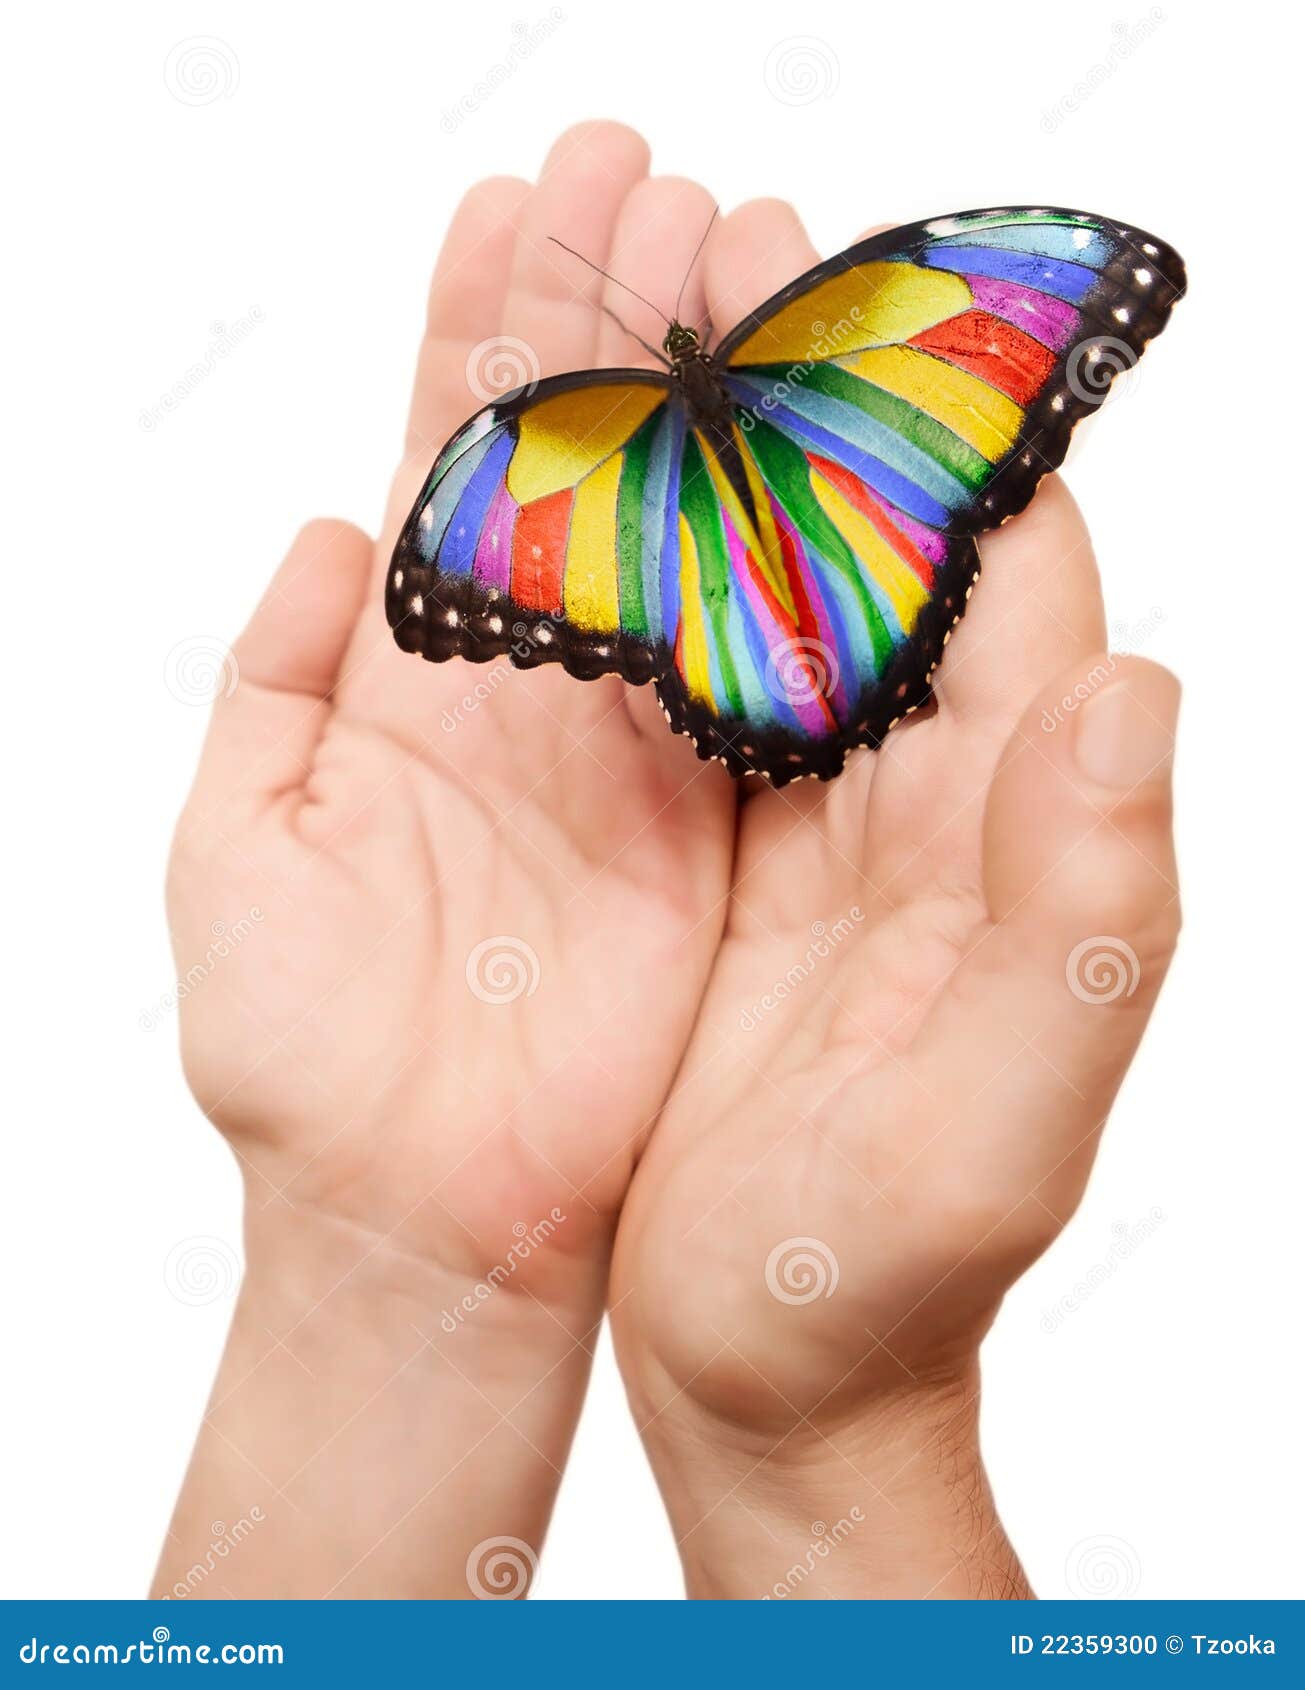 超过 100 张关于“彩虹蝴蝶”和“蝴蝶”的免费图片 - Pixabay